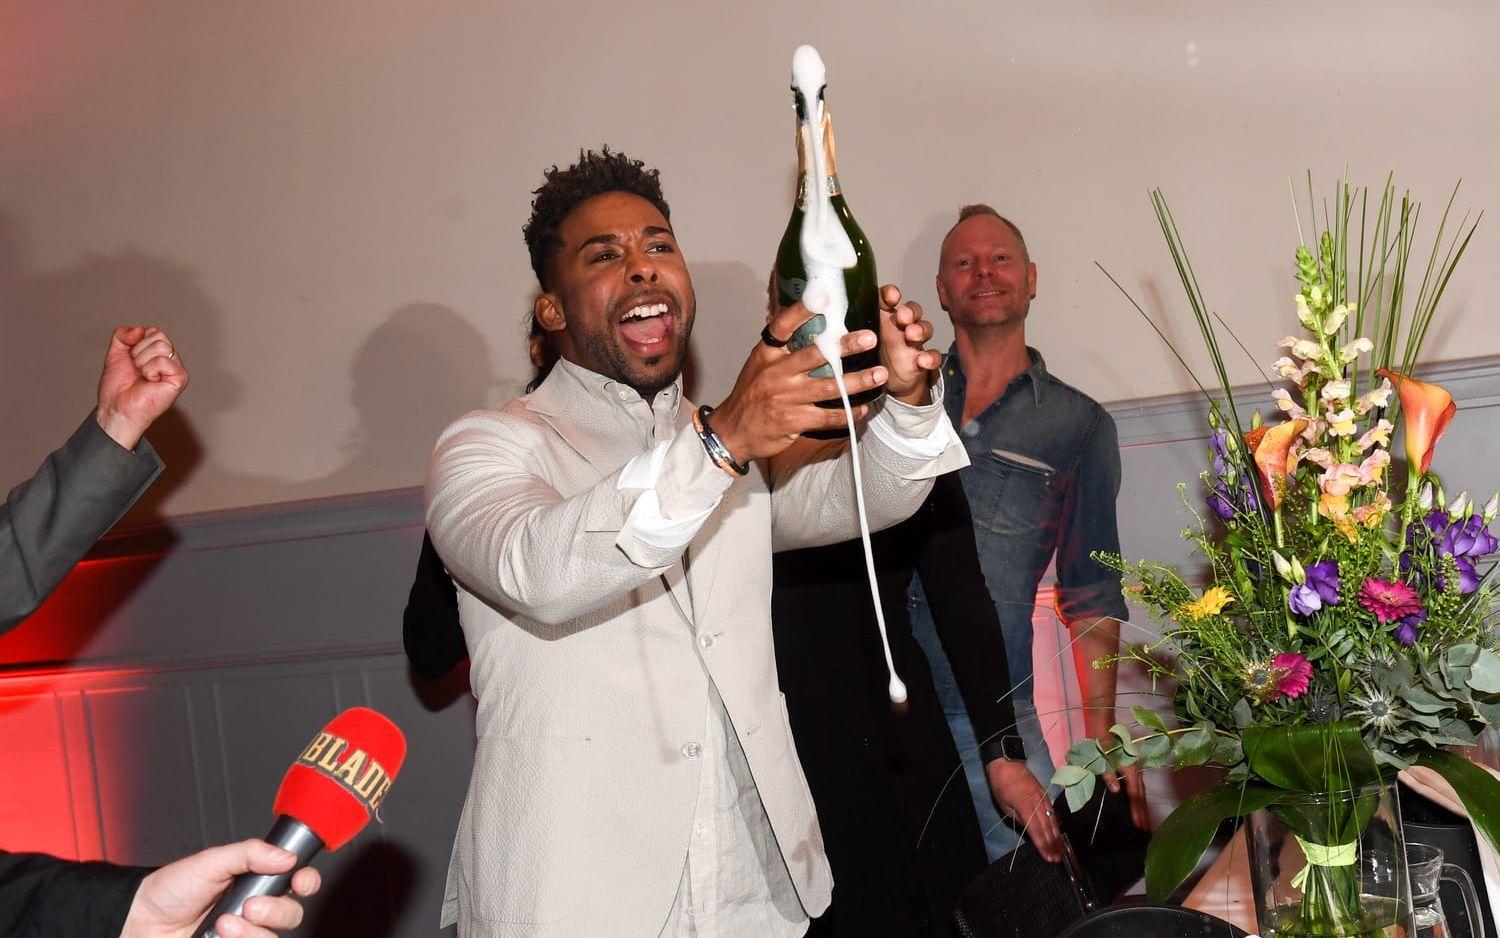 En lycklig John Lundvik öppnar en flaska champagne på efterfesten på Elite Stadshotellet Karlstad efter lördagens första deltävling i Melodifestivalen 2018 i Löfbergs Arena.

